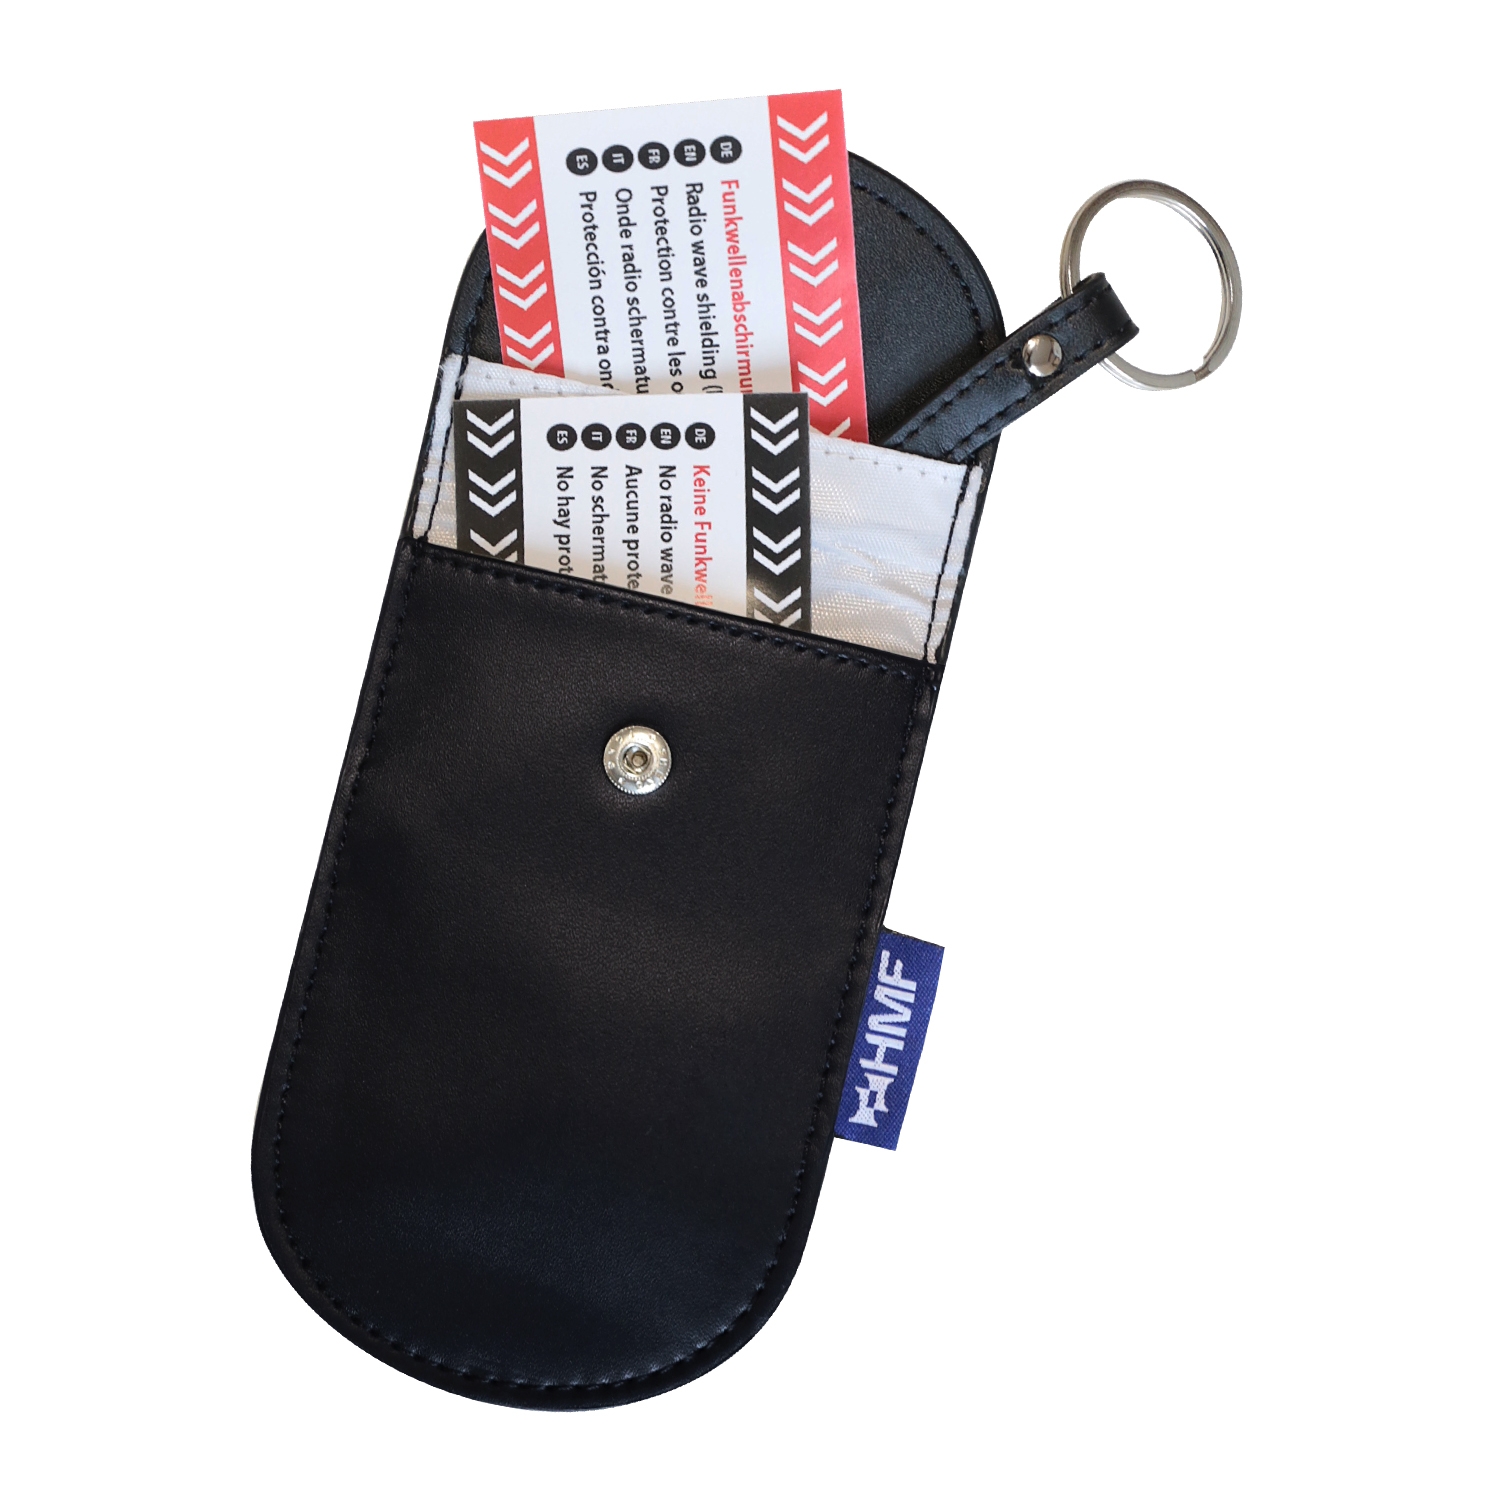 AutoSchlüssel Schutz Schlüssellose Abdeckung 2 Pack Abschirmung Schlüssel  tasche Schlüsselfall Schlüsseletui Autoschlüssel Safe